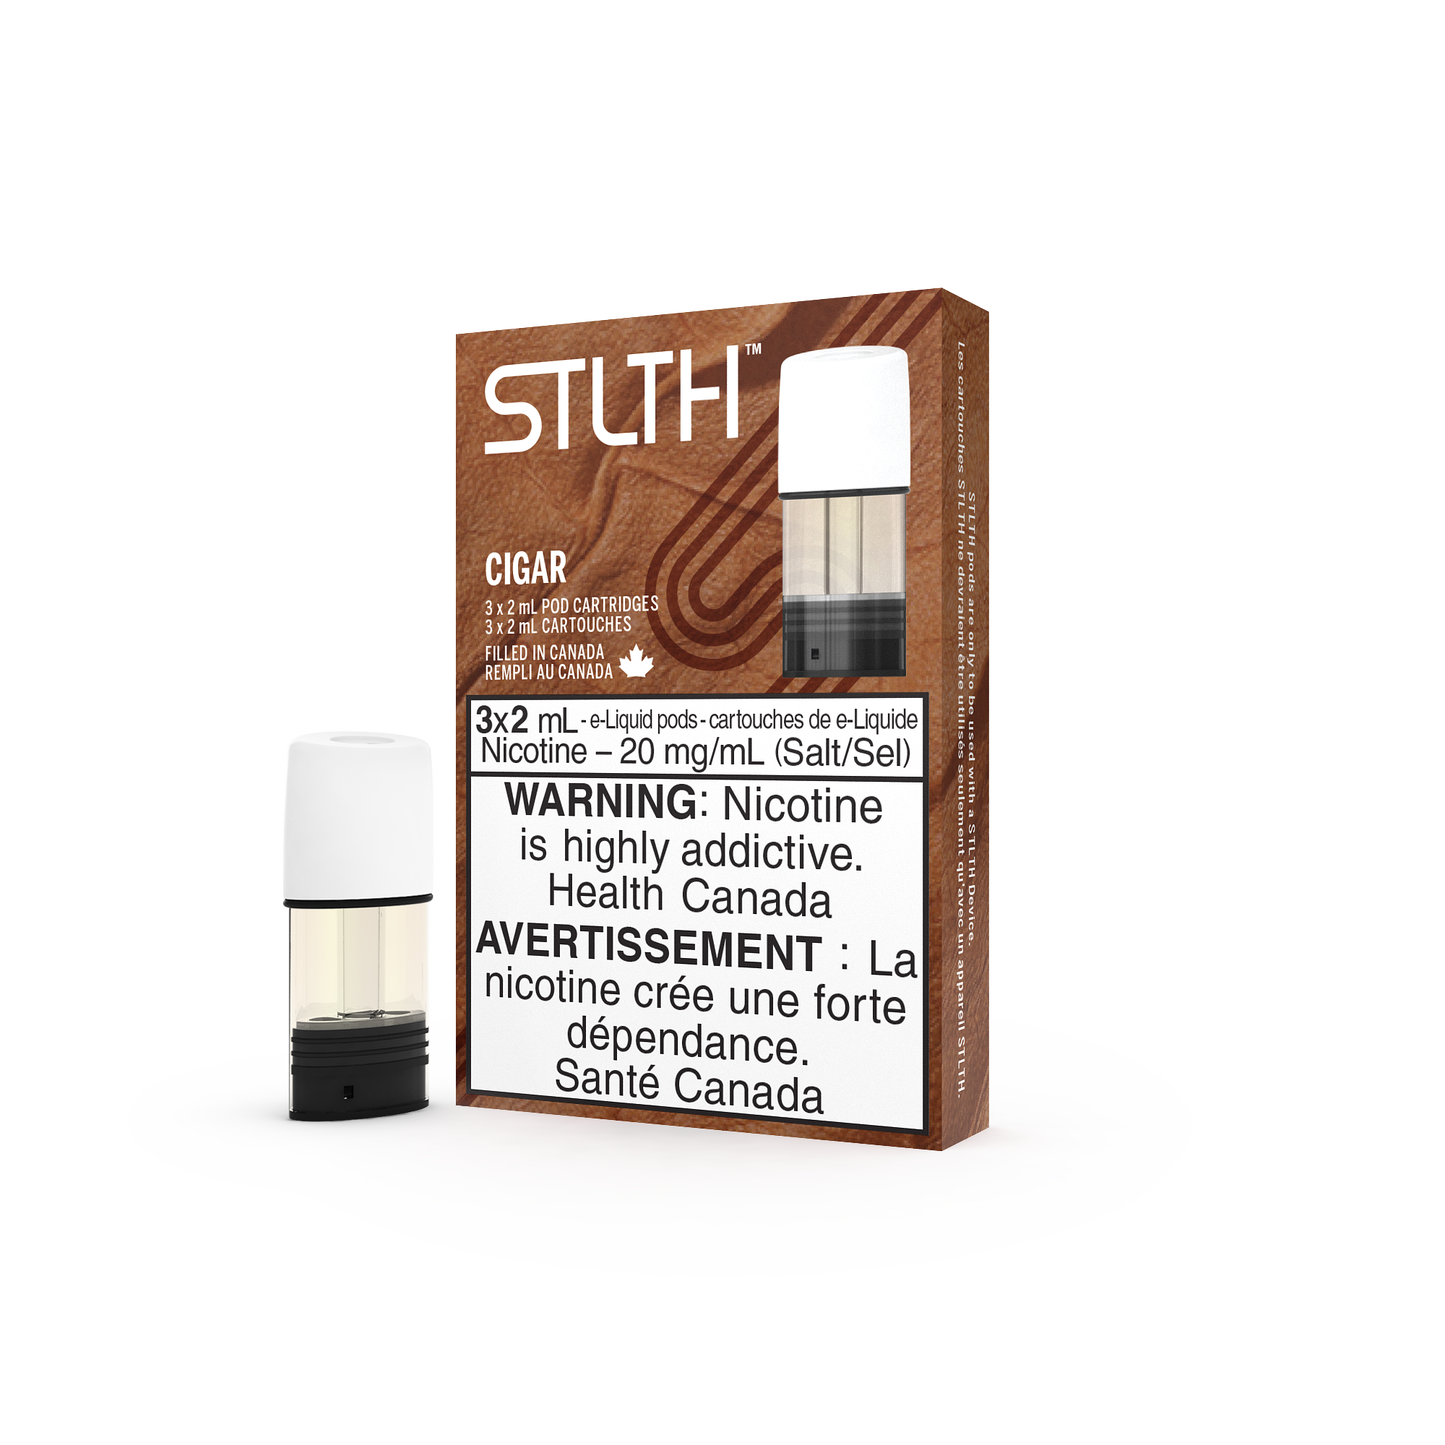 STLTH - Cigar